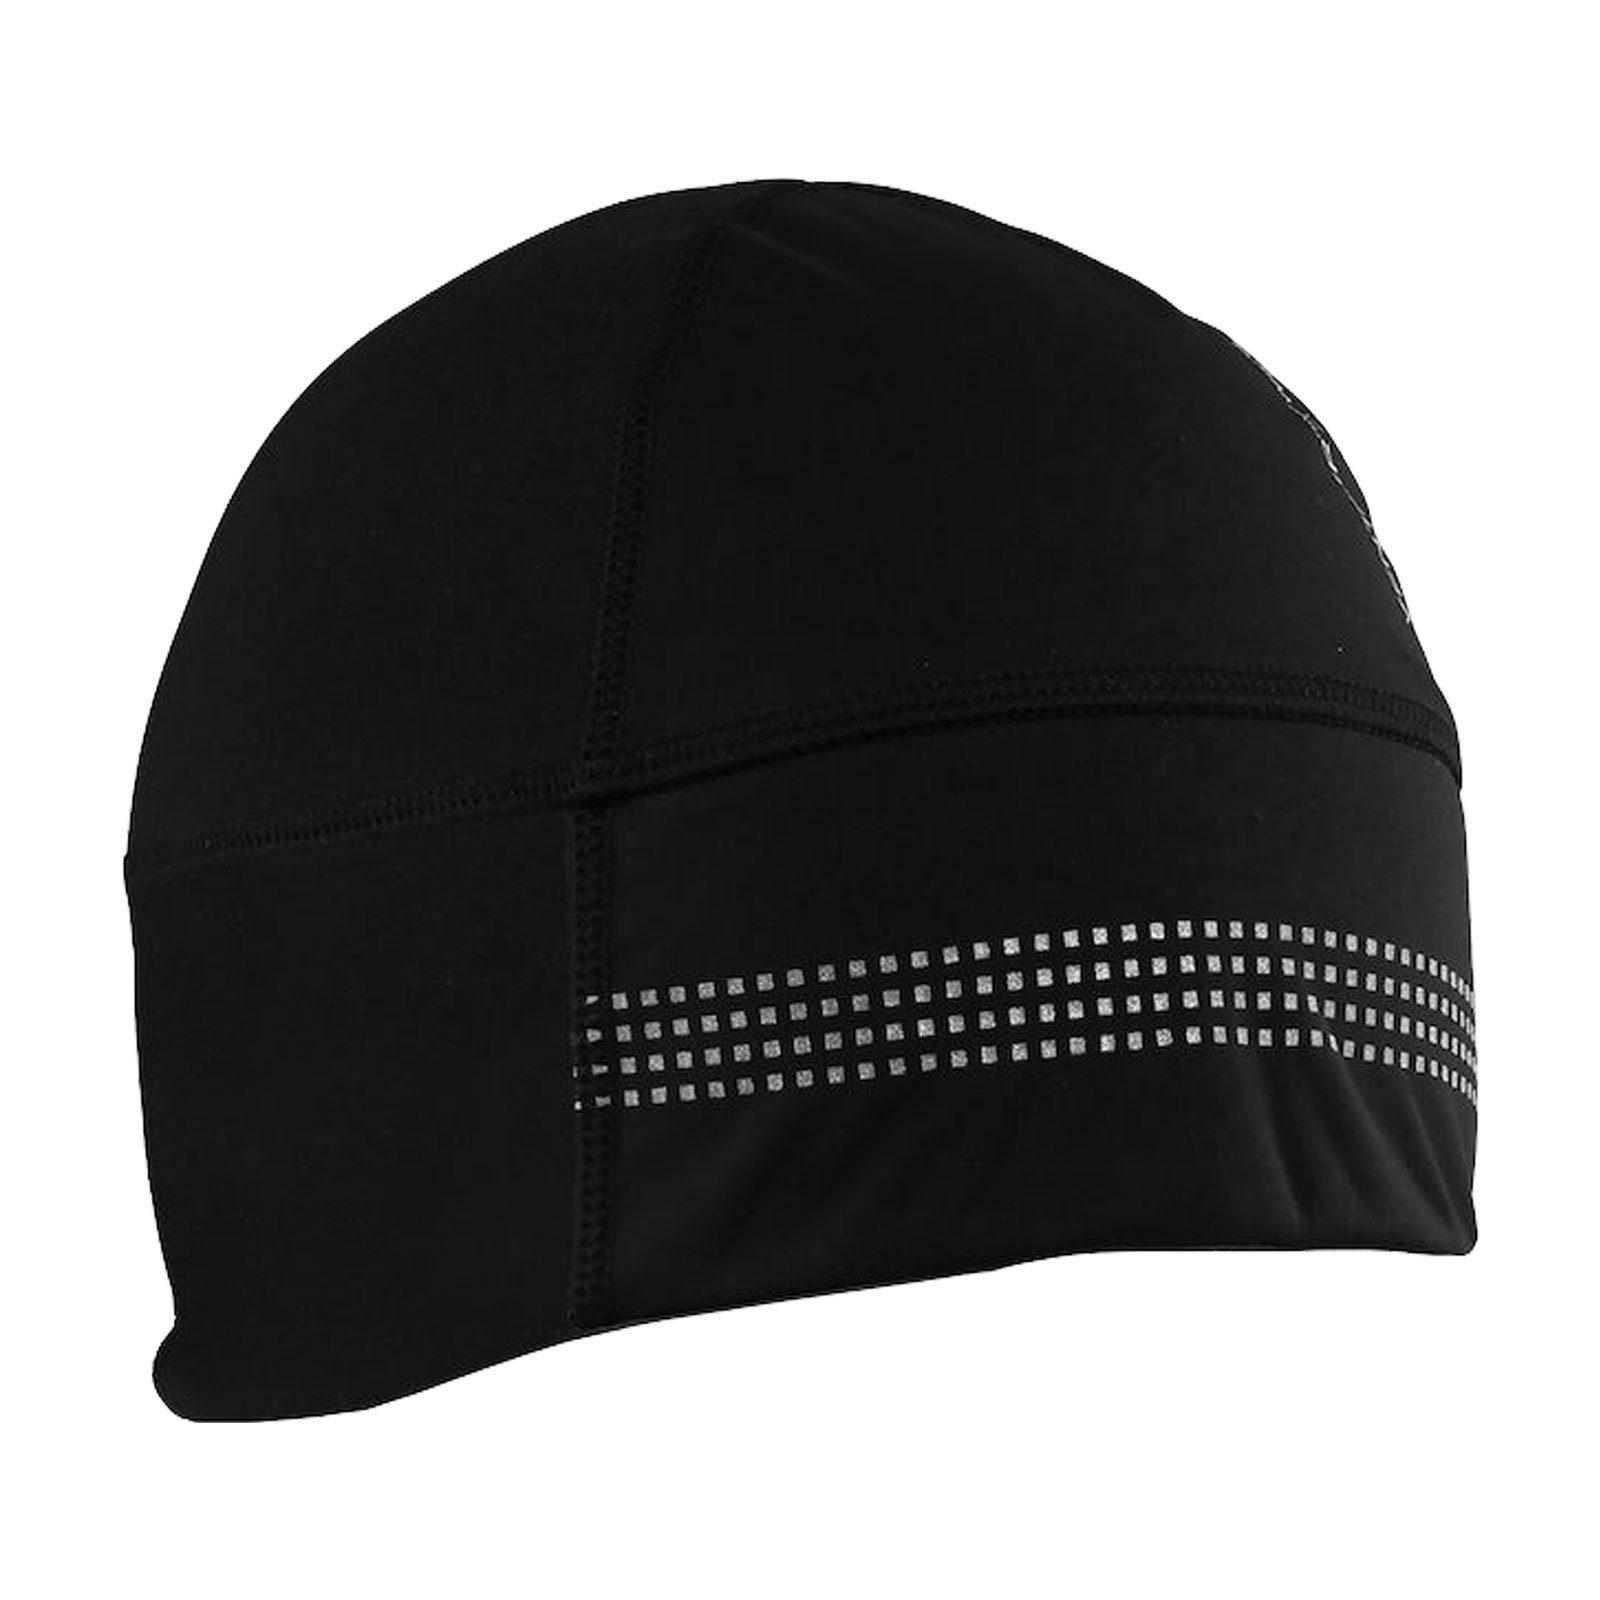 Craft 999000 2.0 black Elementen Hat Skimütze mit reflektierenden Shelter